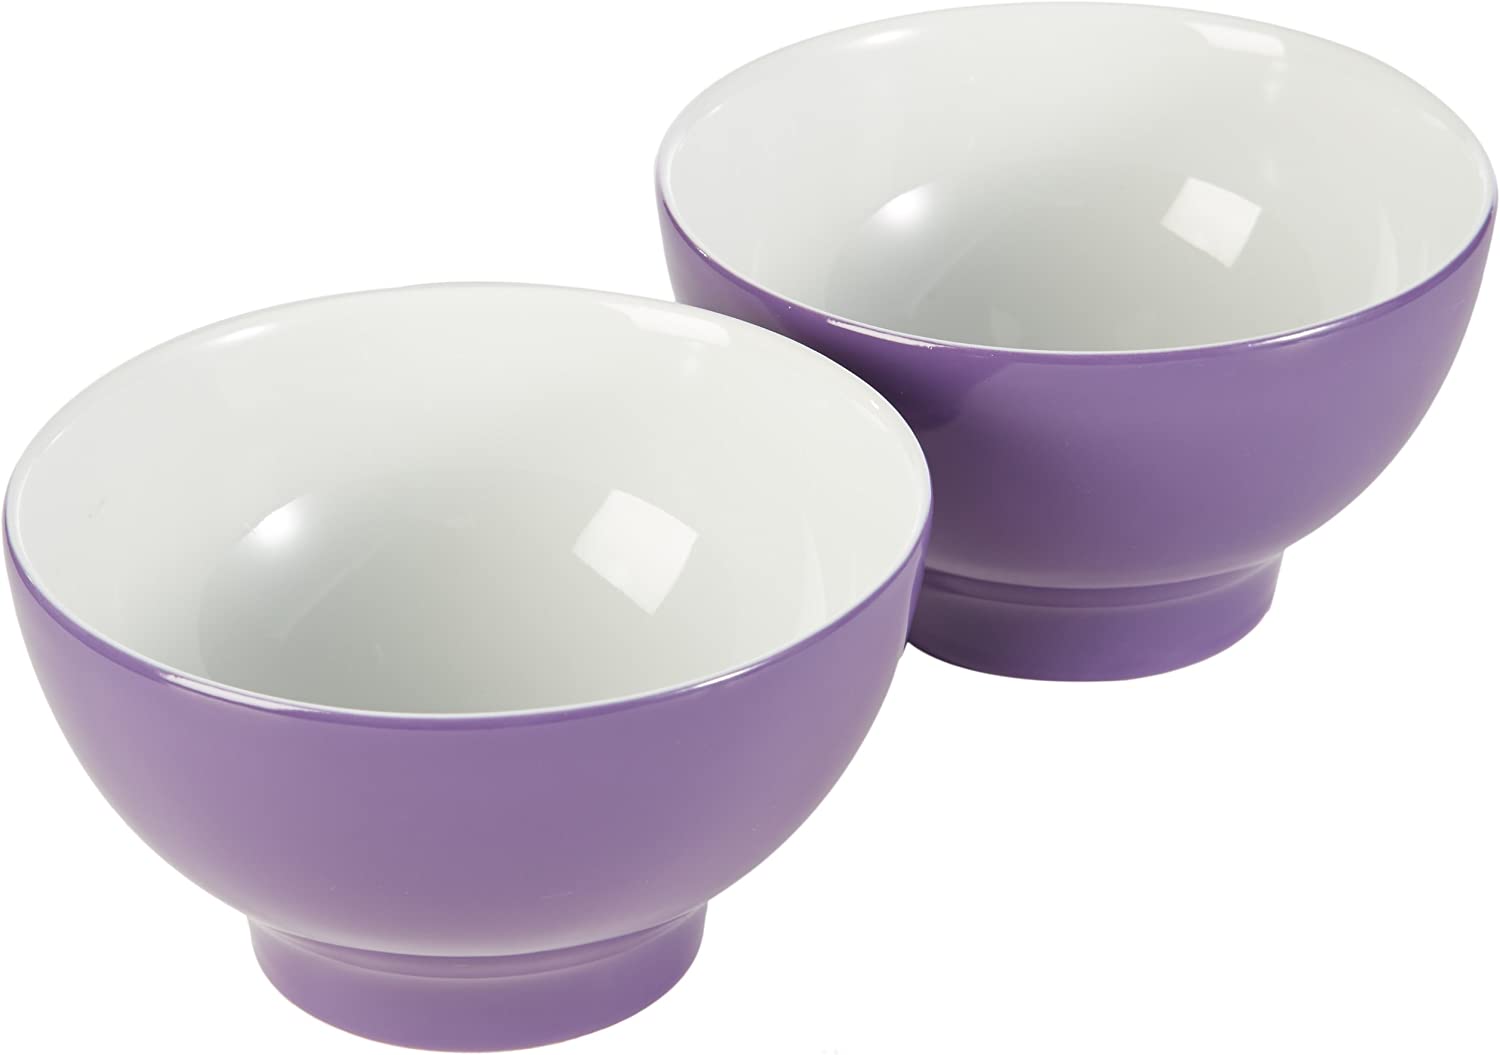 Kahla Pronto 57C148A72820C Bowls Set of 2 Purple